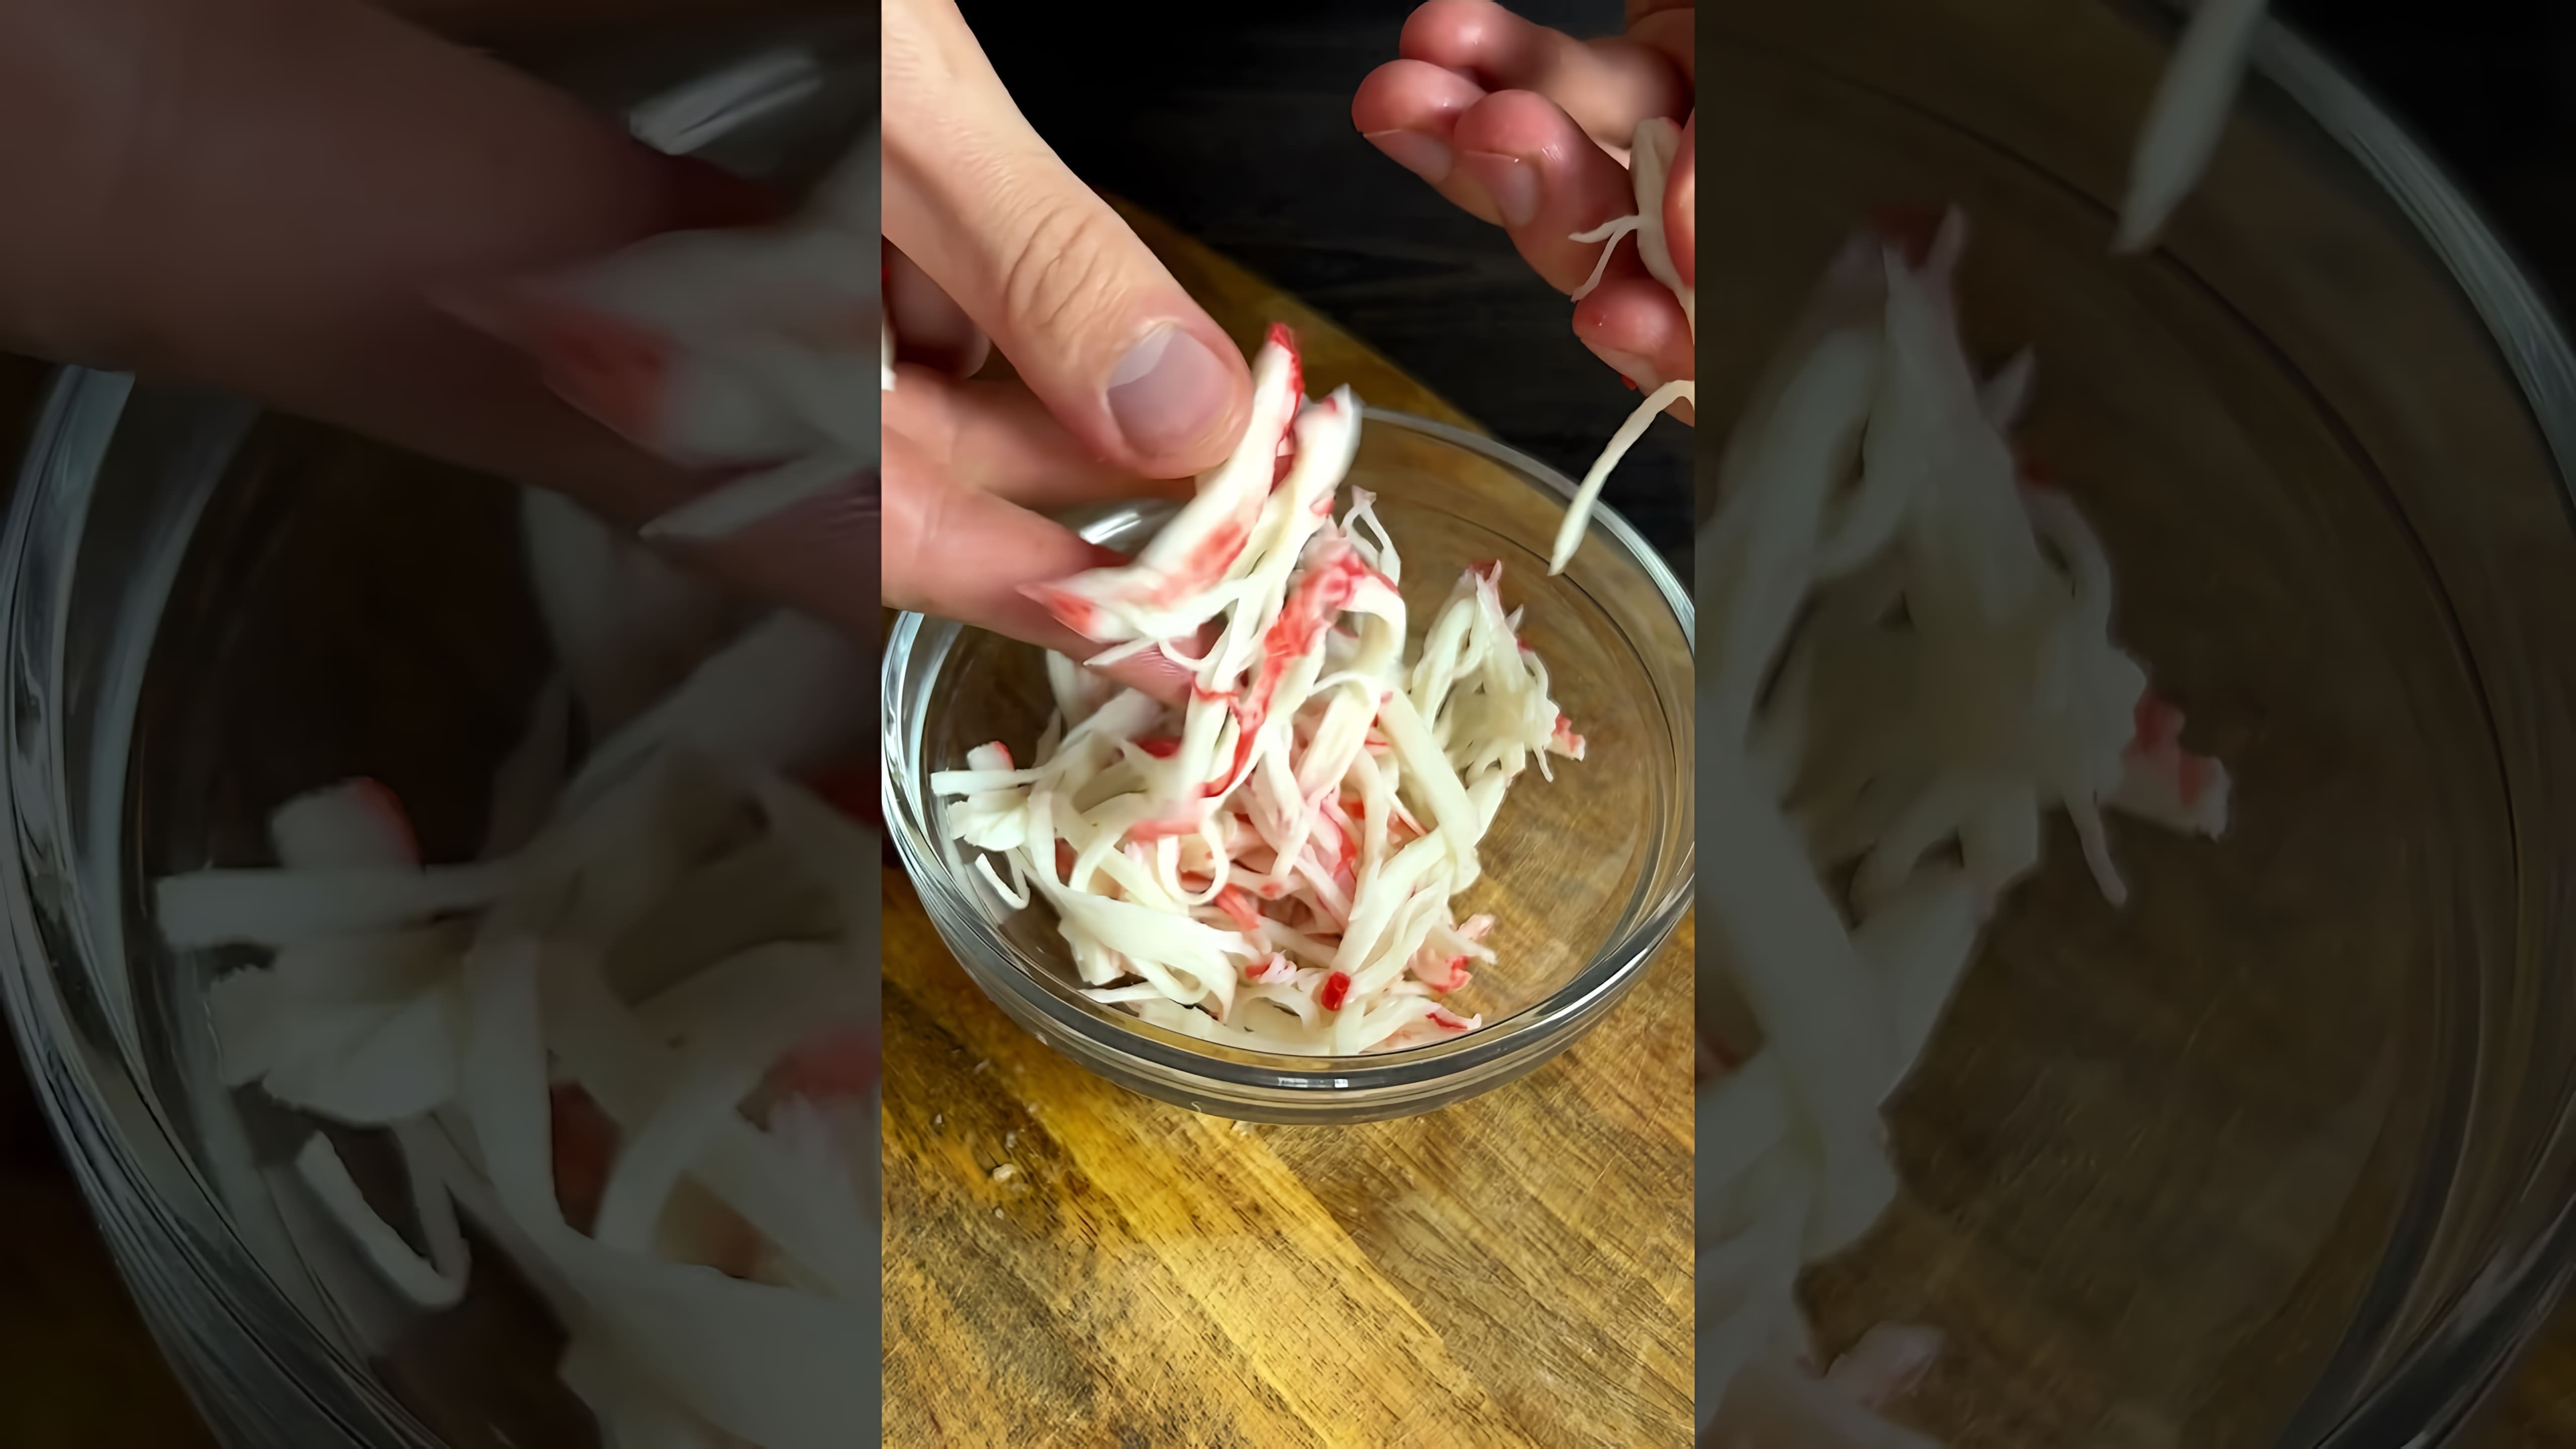 Хрустящий суши ролл со спайси - это видео-ролик, который демонстрирует процесс приготовления и подачи этого популярного блюда японской кухни